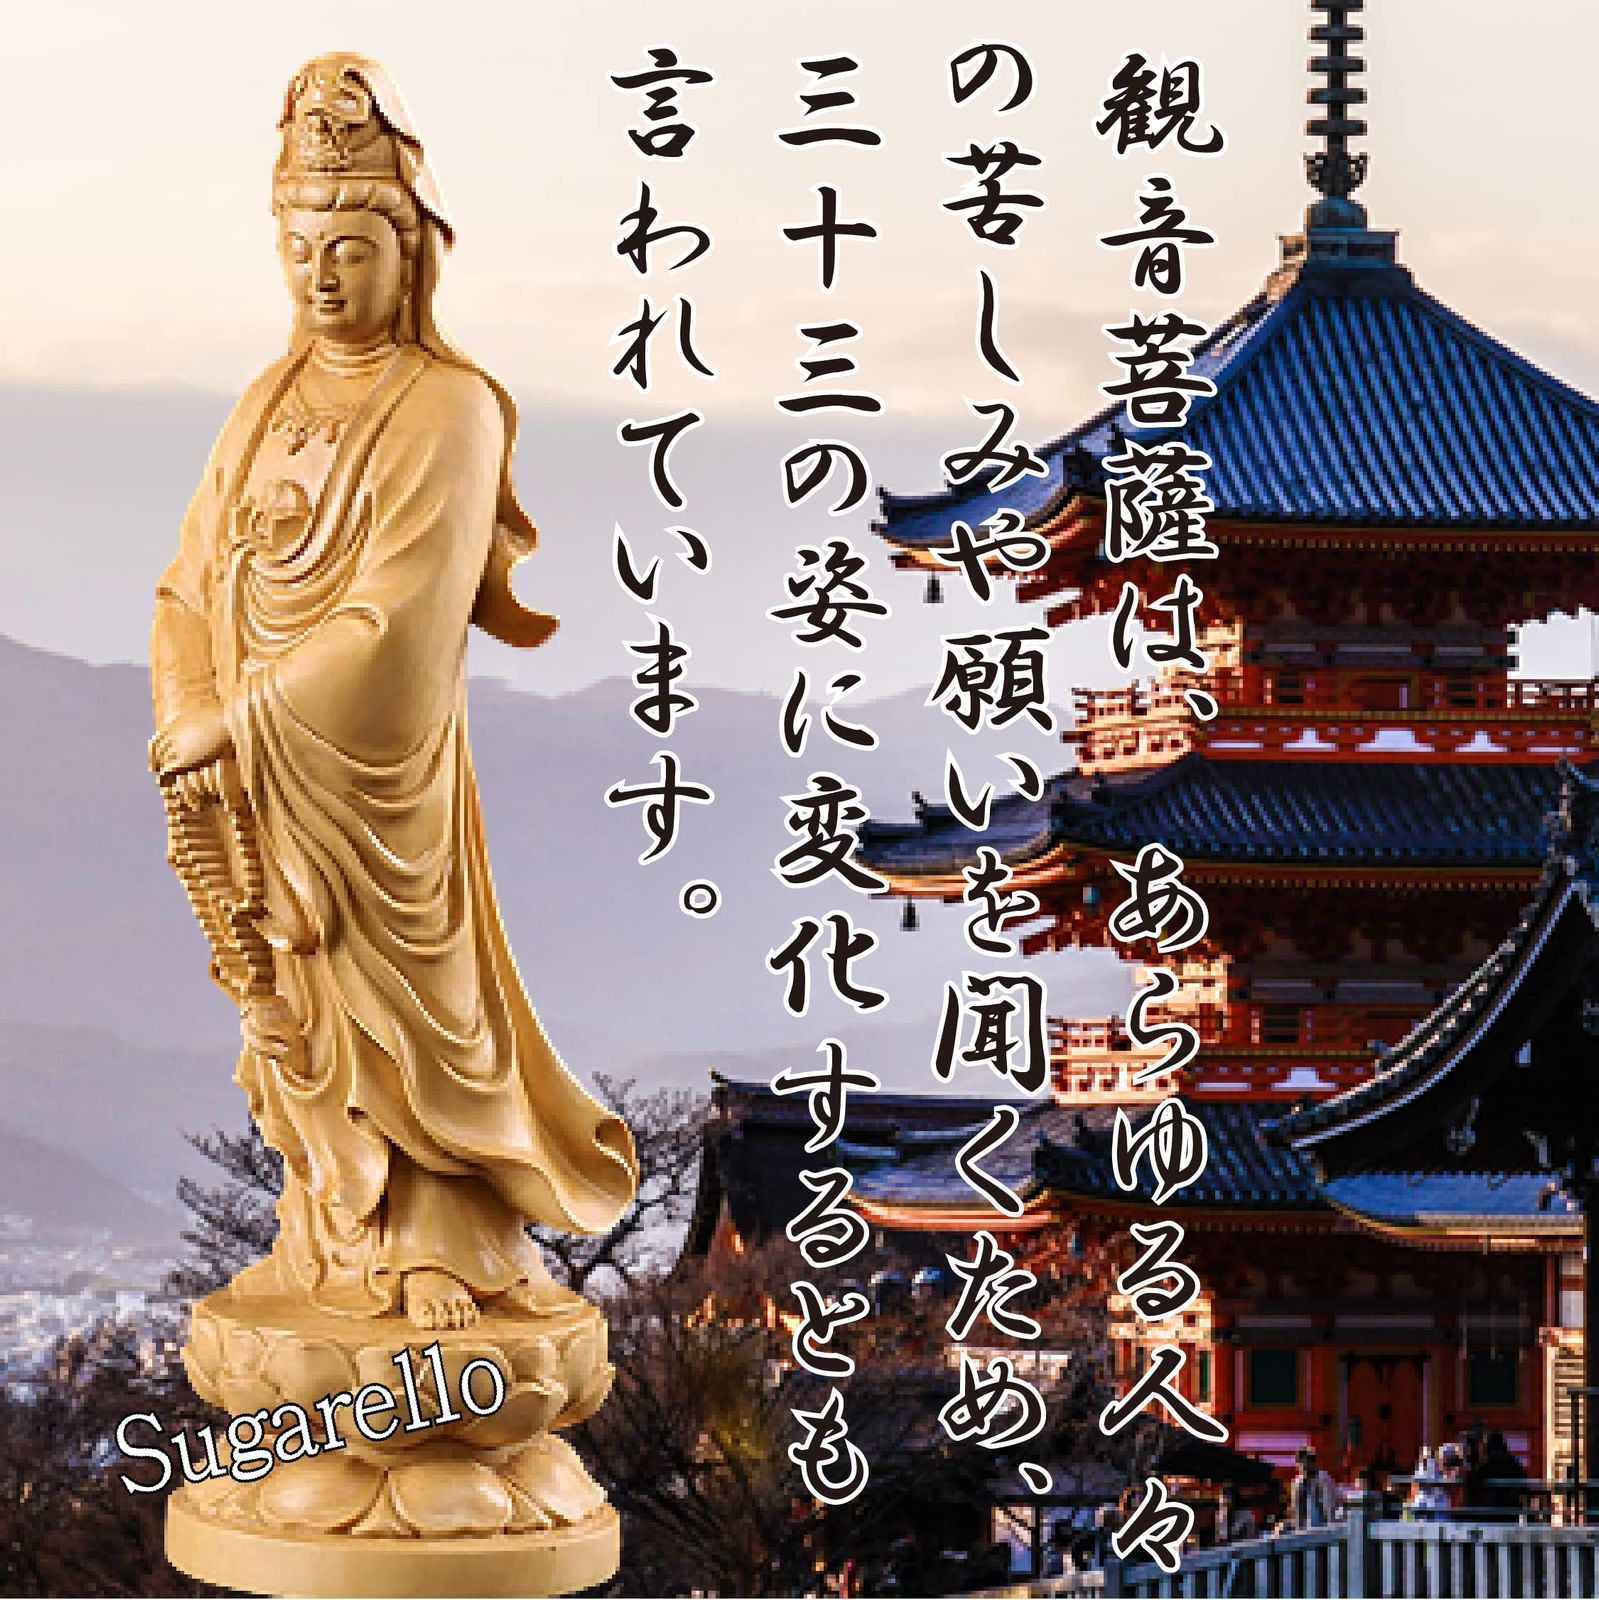 Sugarello 観音木彫 仏像 木彫り 観音像 木製彫刻 ツゲ製 高級木彫り 仏教美術 仏壇仏像 高さ12cm - メルカリ